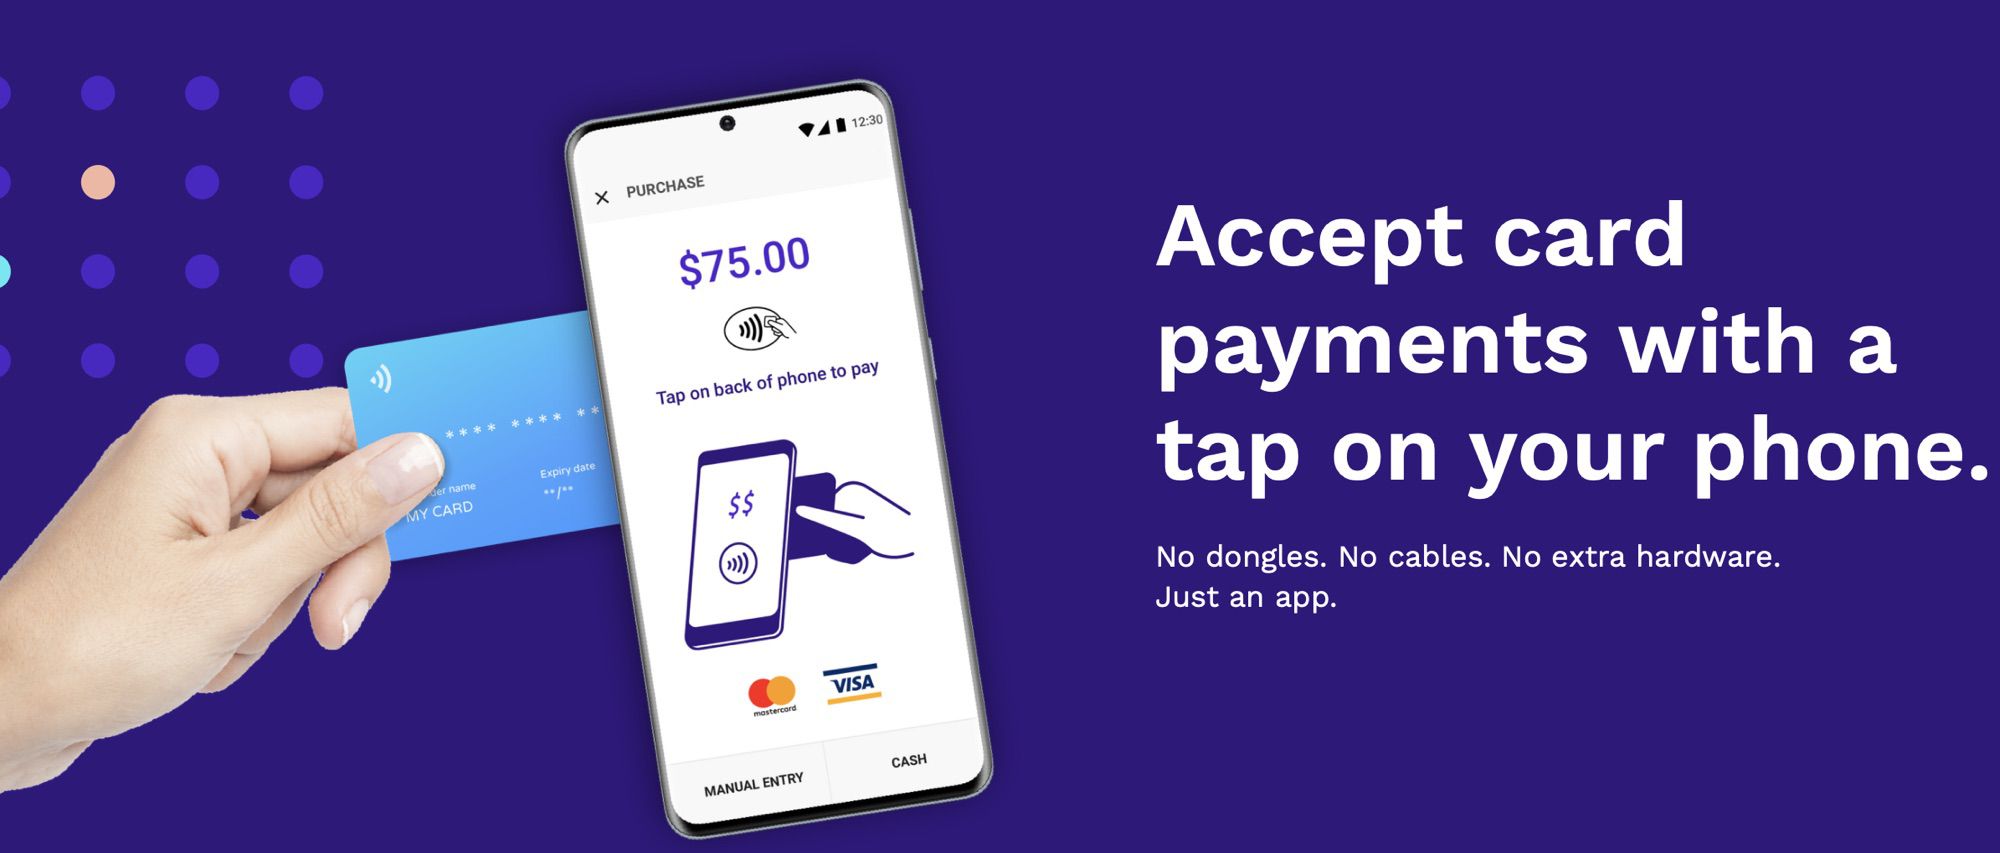 La próxima actualización de iOS permitirá que los iPhone acepten tarjetas de crédito directamente usando NFC